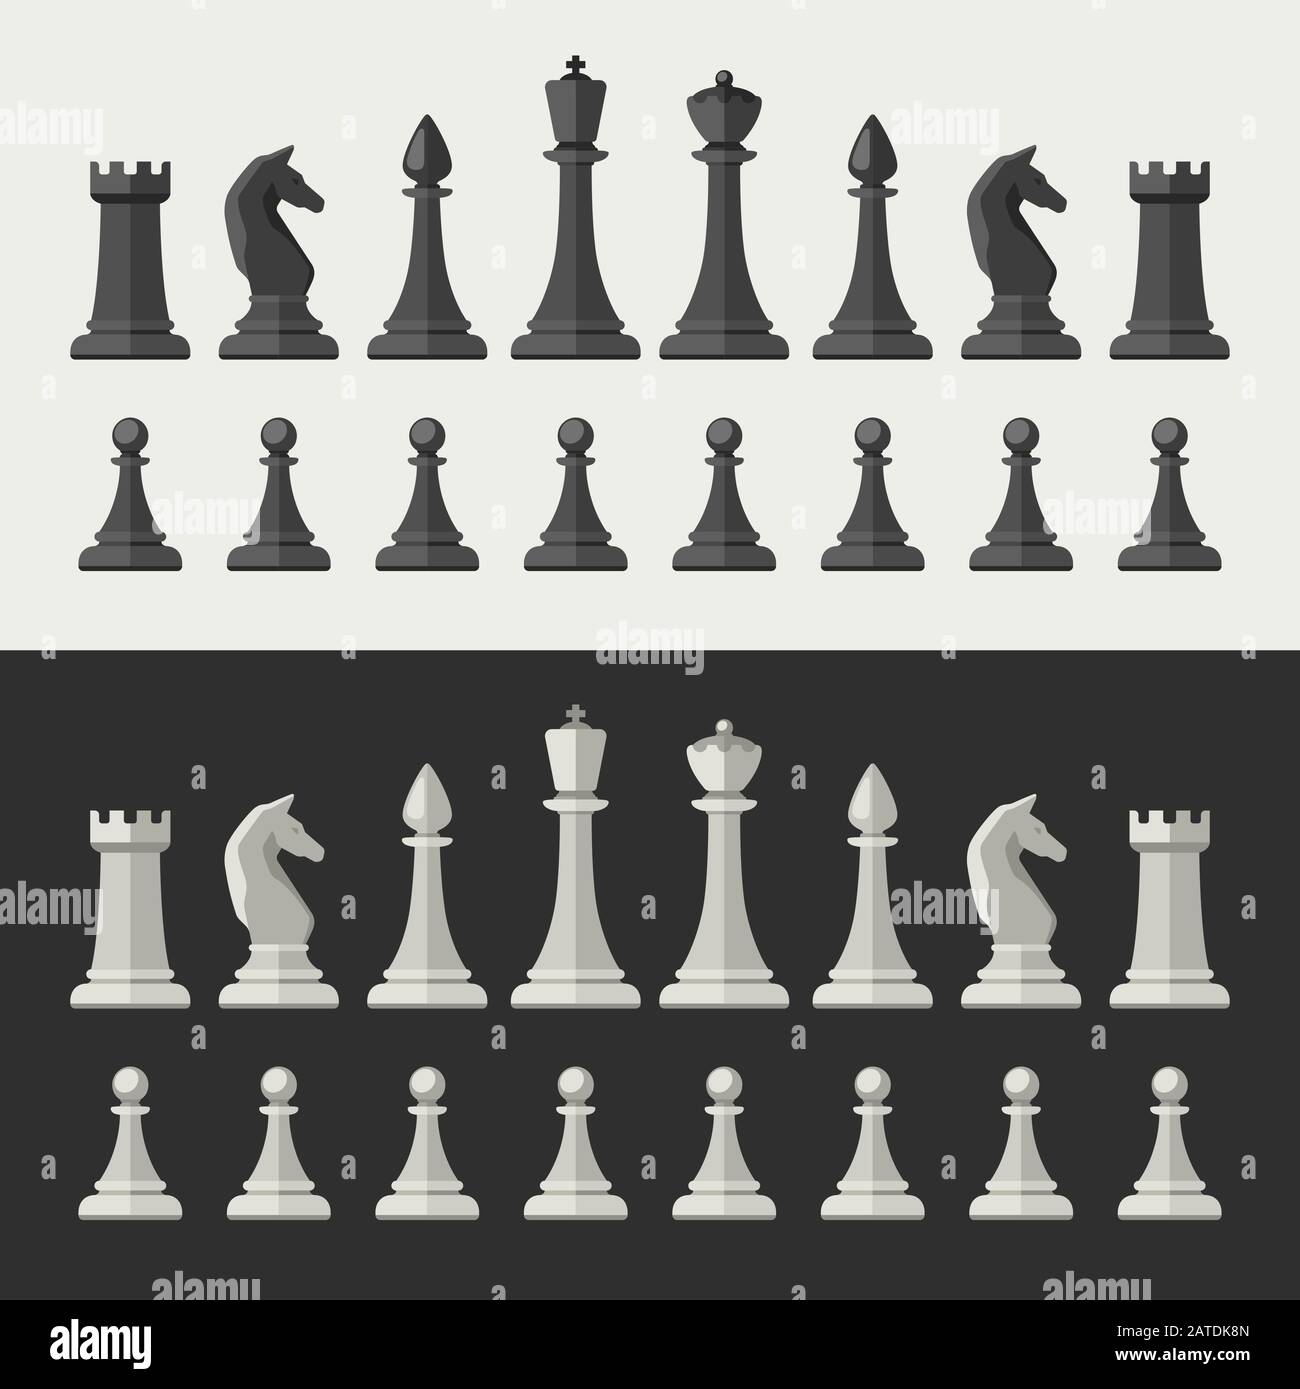 Schachfiguren im flachen Stil. Schwarz-weiße Schachsymbole. Stock Vektor